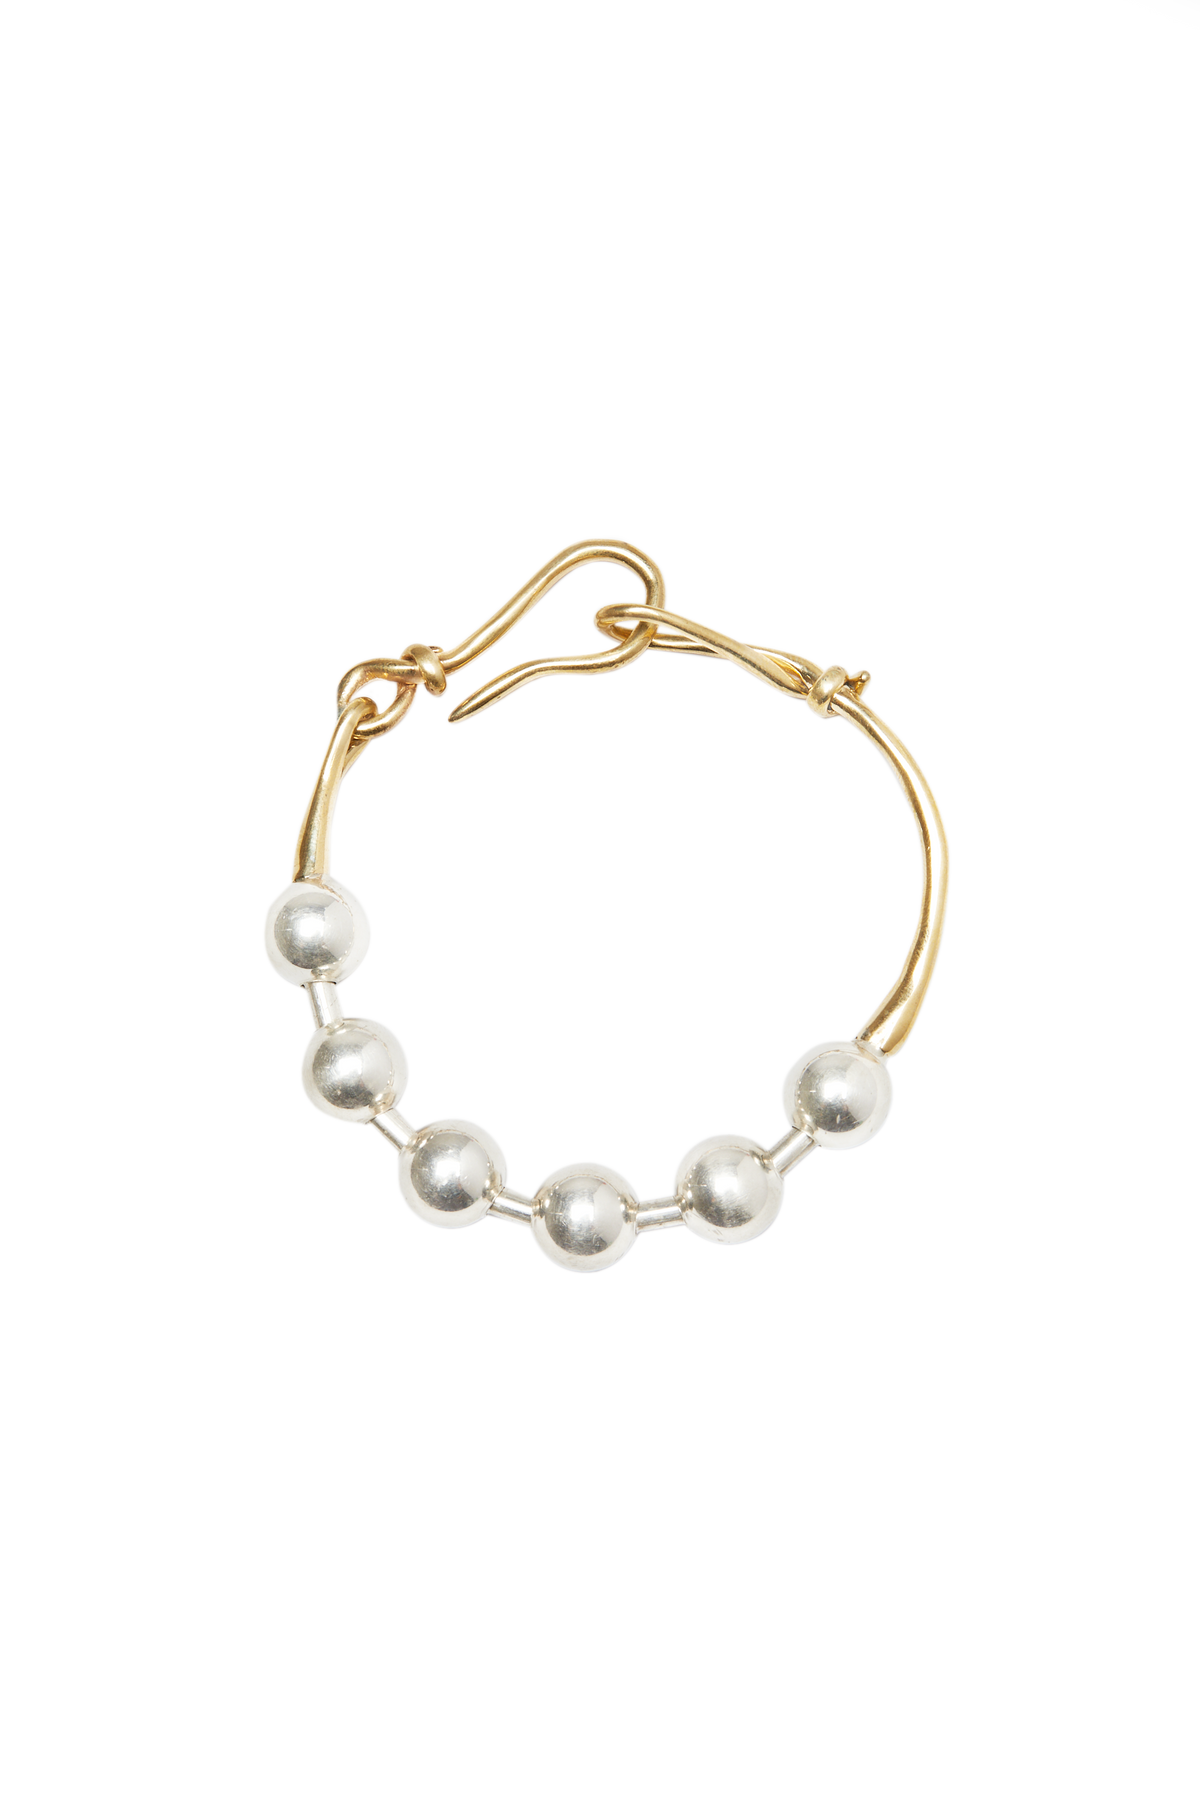 wireball bracelet – Hernan Herdez